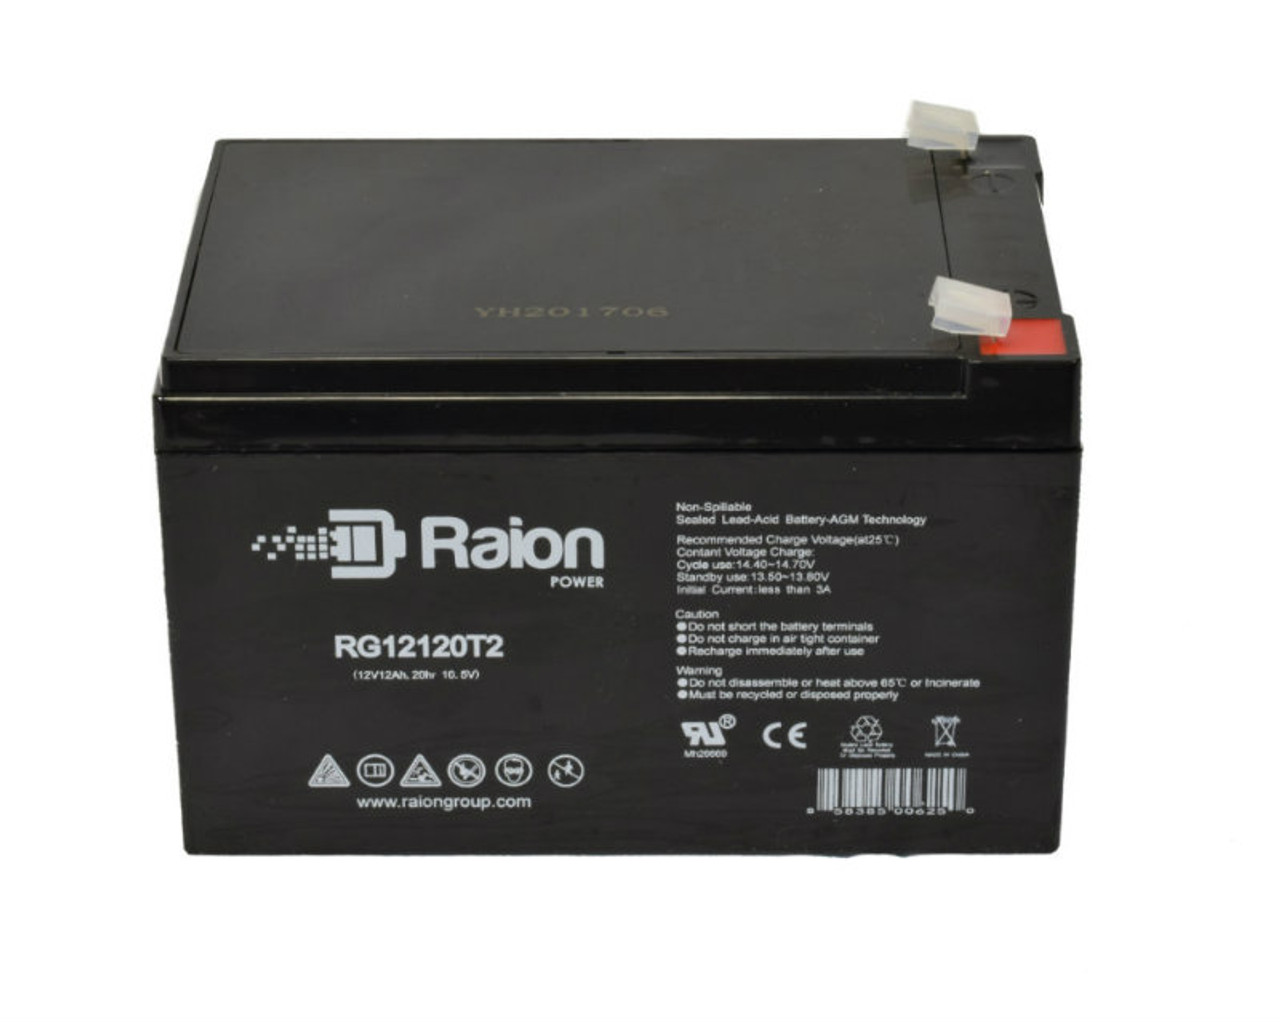 Raion Power RG12120T2 SLA Battery for Delta DTM 1212